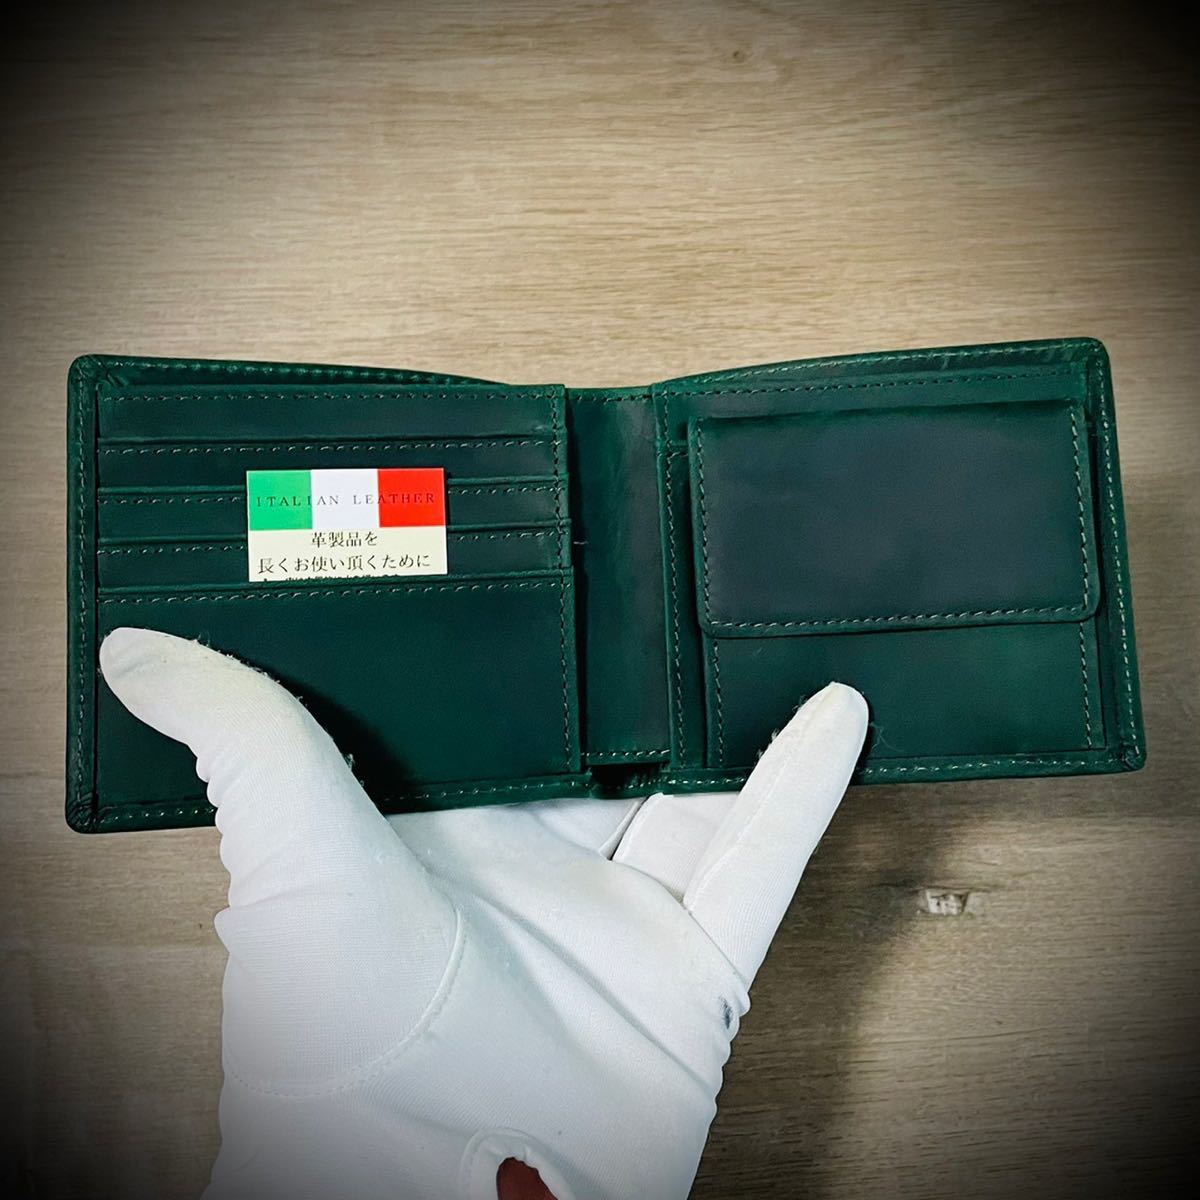 イタリアンレザー 折財布 二つ折り 本革 ヌバック メンズ 牛革 経年変化 ハンドメイド コンパクト 送料無料 グリーン